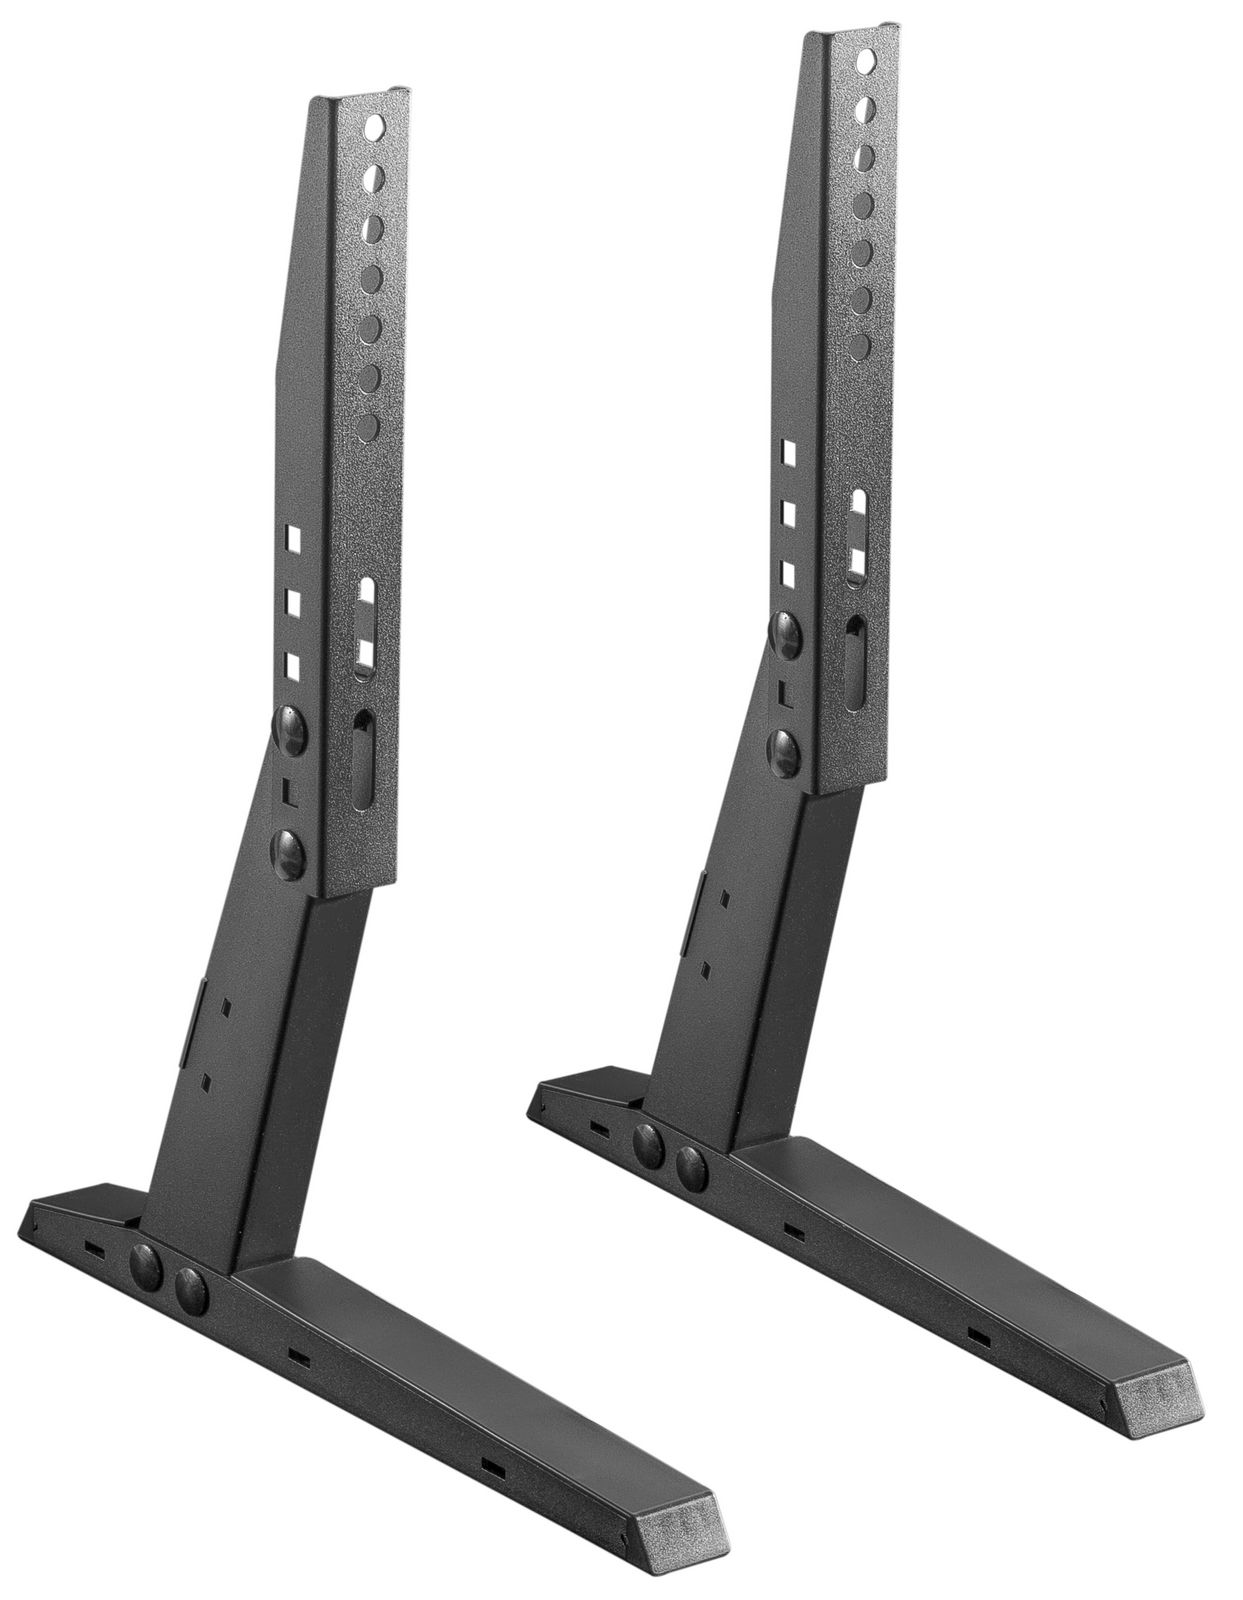 Universal Standfuß für Flachbildschirme MyWall HP35 für Bildschirme 13''-37" (33-94 cm),Belastung bis 35 kg 2 Stück schwarz